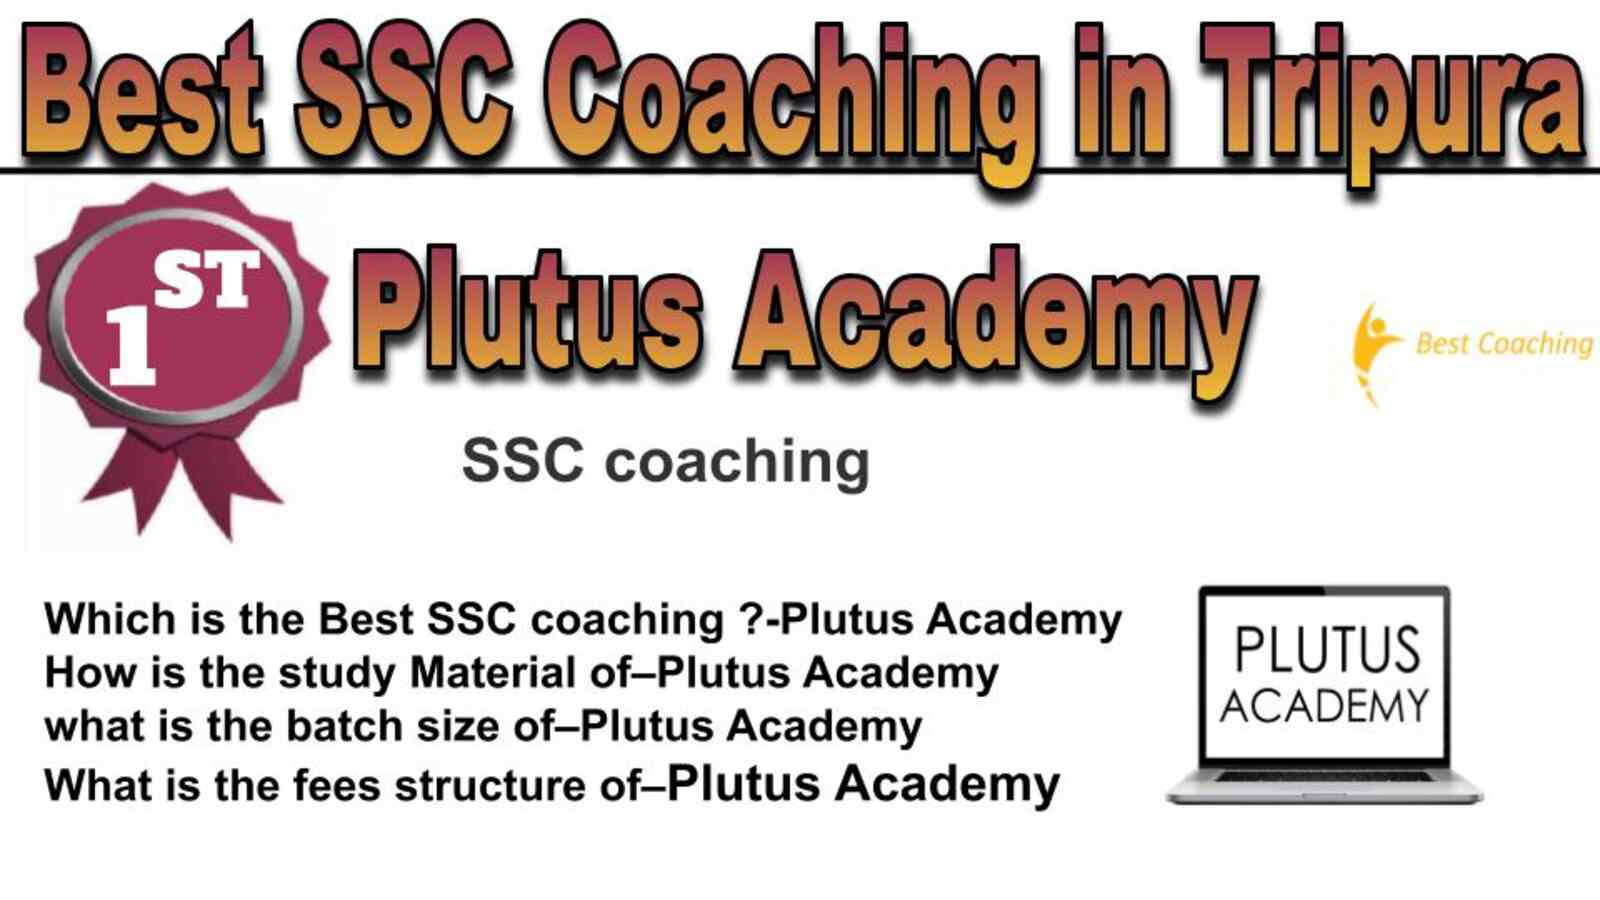 Rank 1 best SSC coaching in Tripura